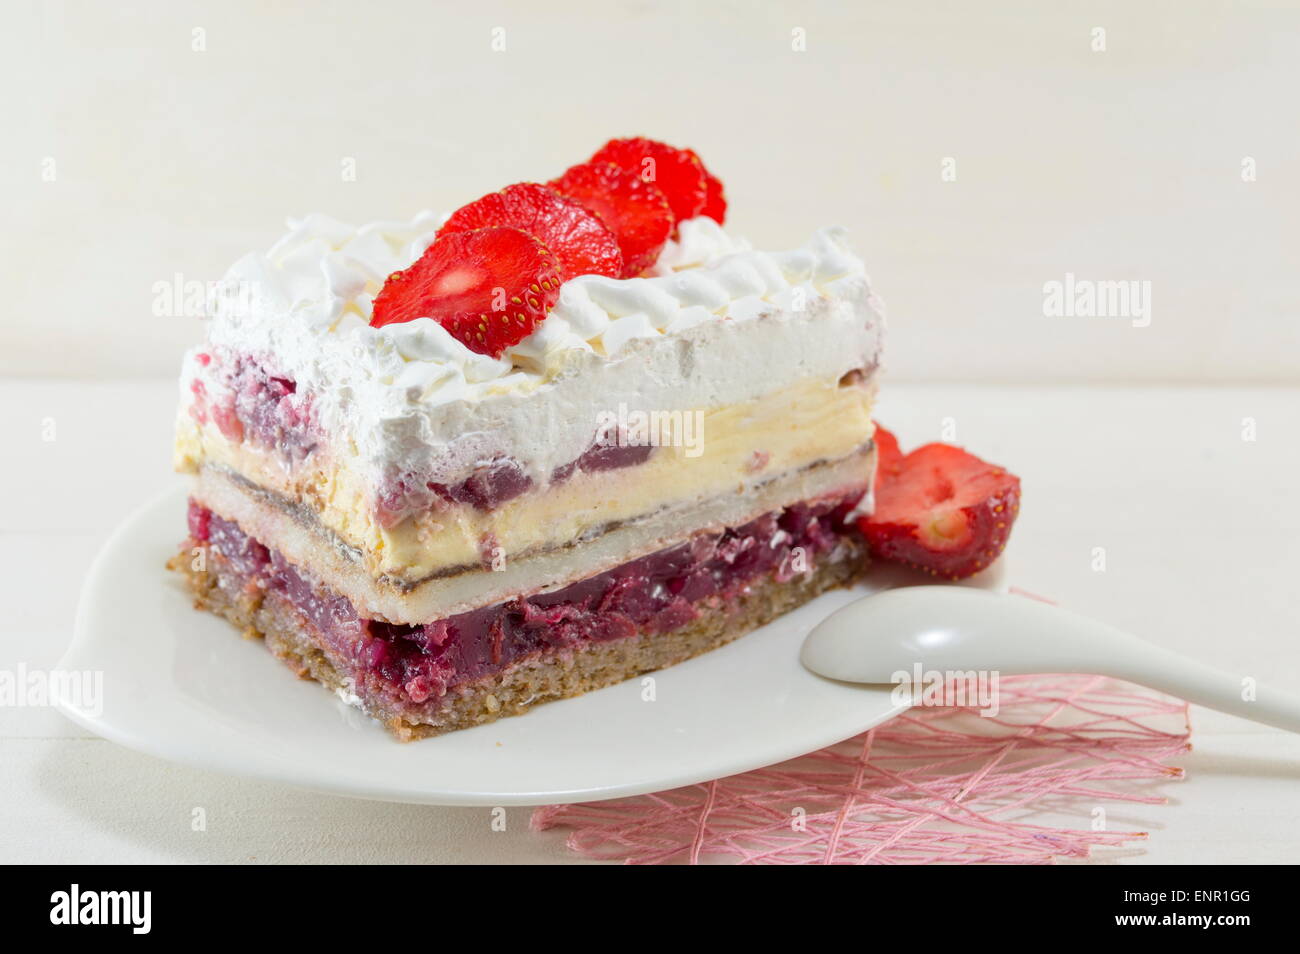 Gâteau aux fraises fait maison avec de la crème fouettée a plate Banque D'Images